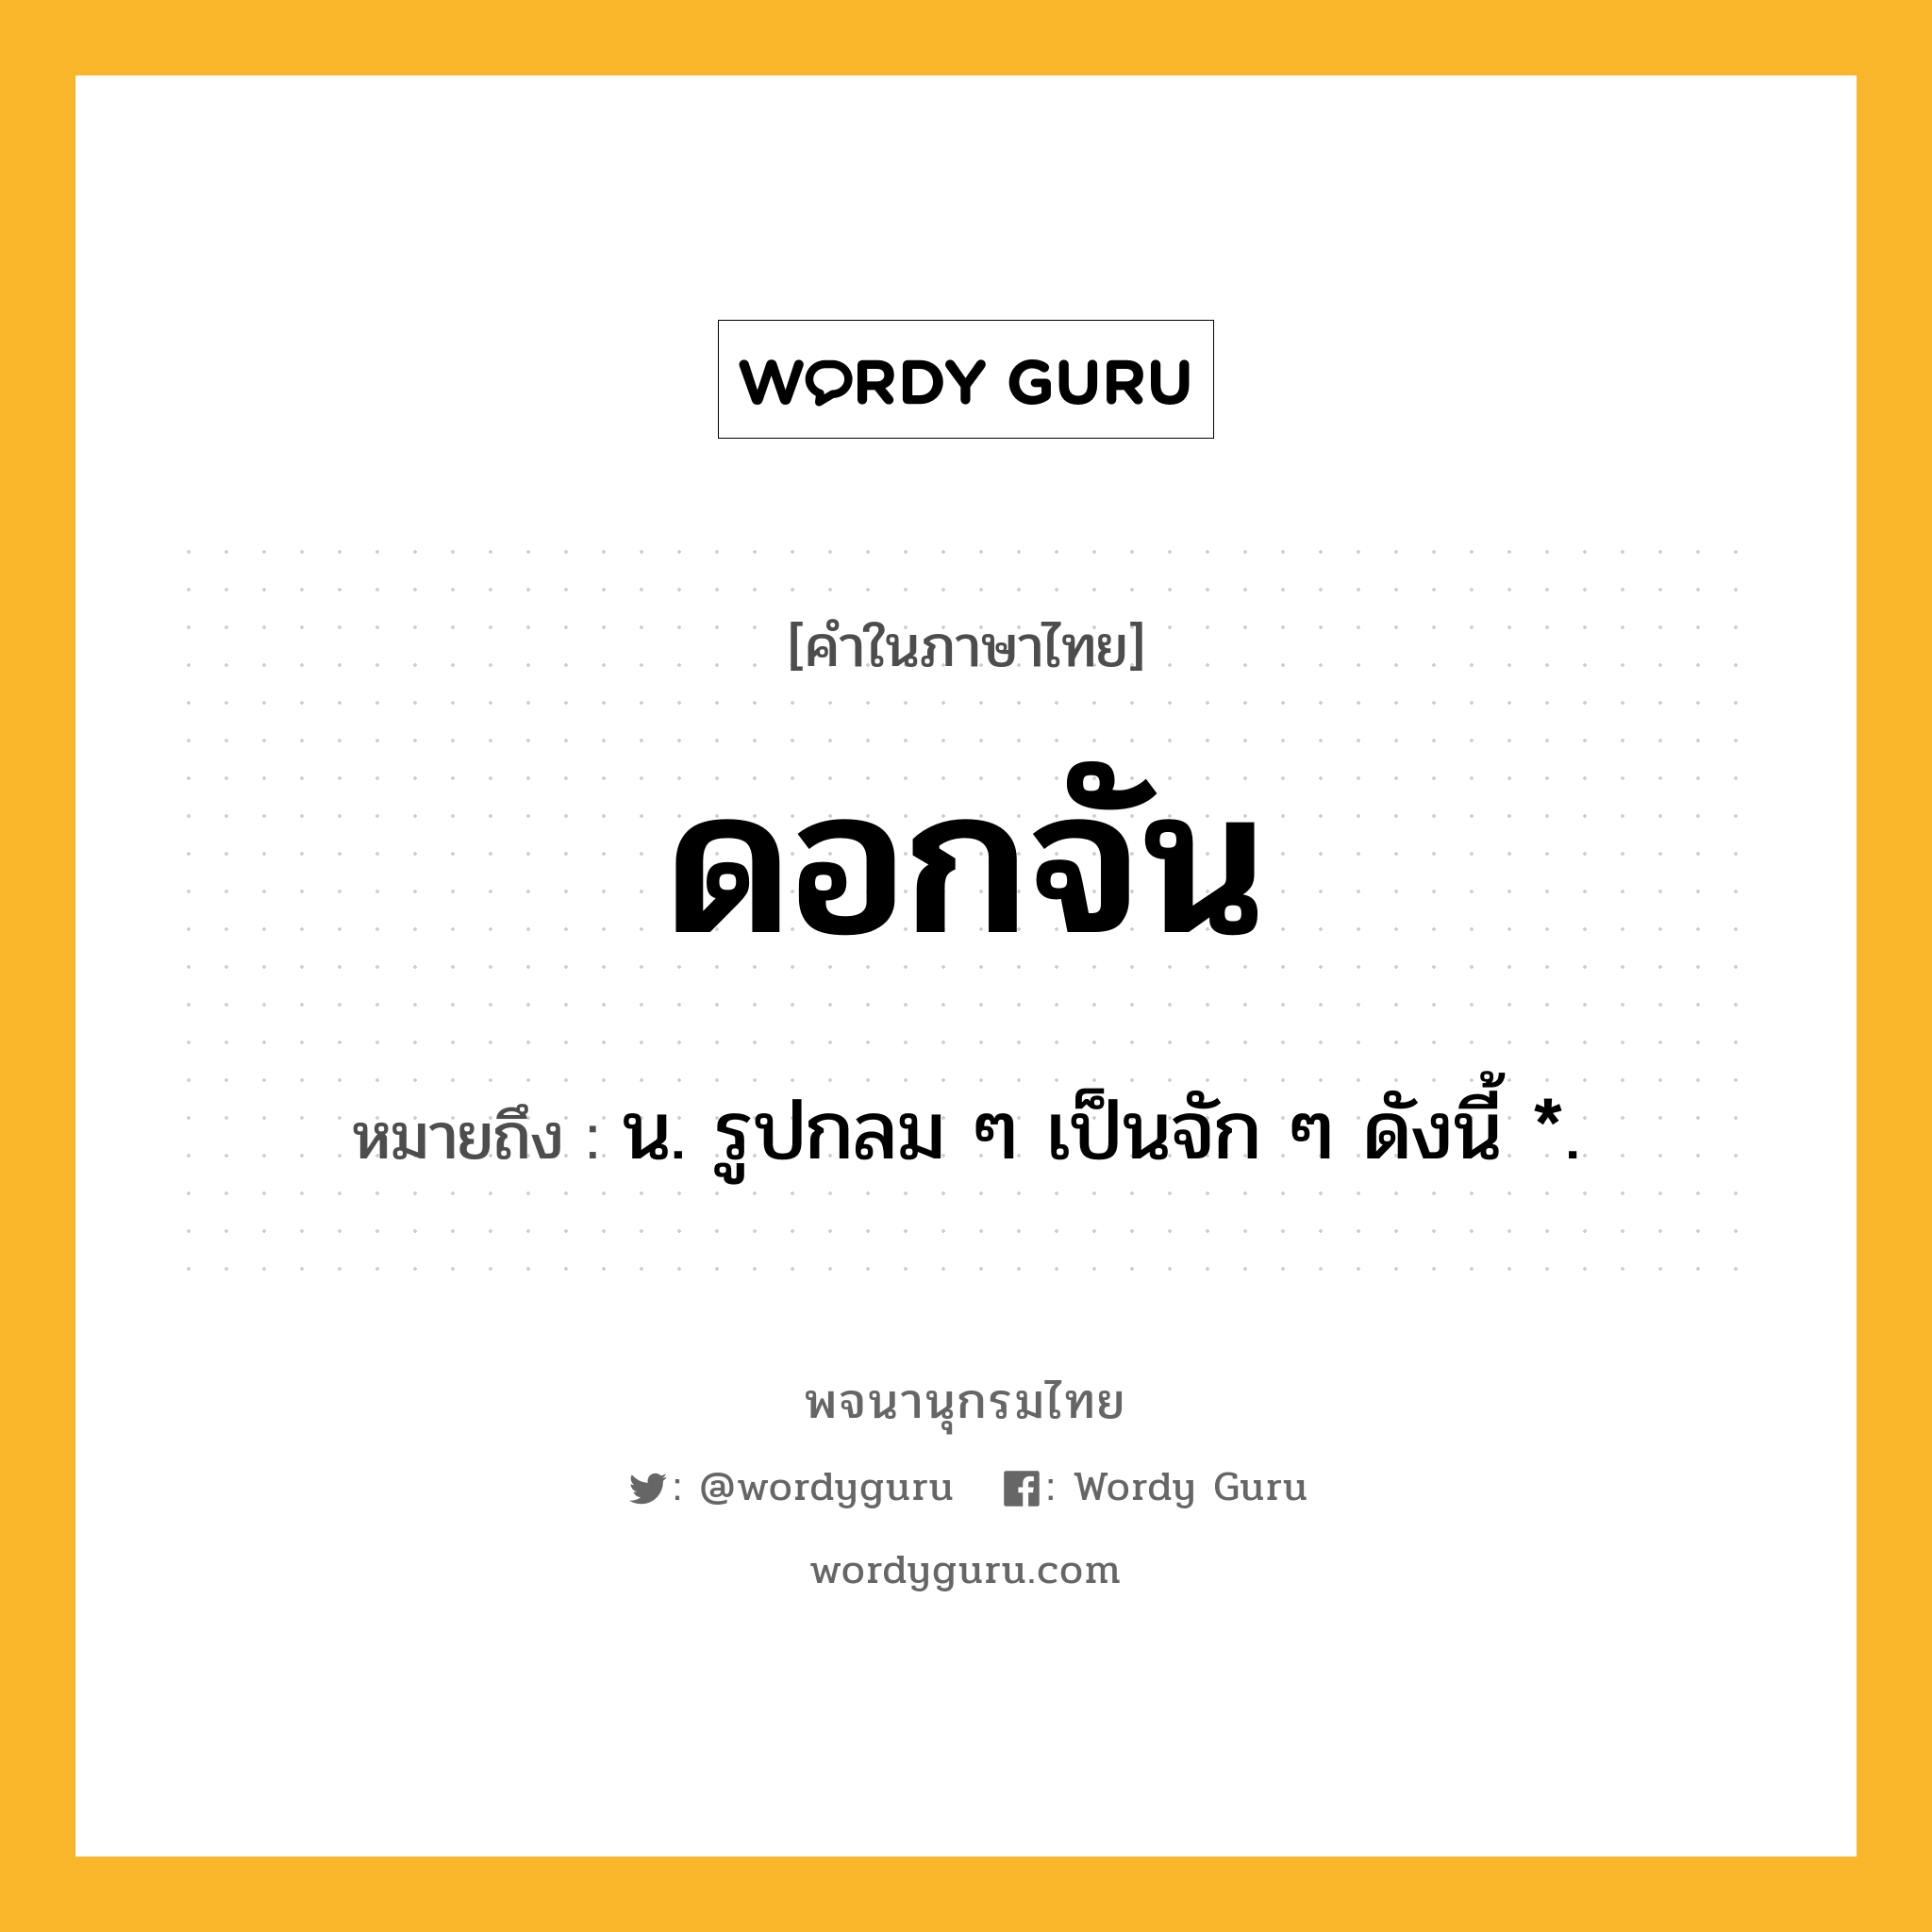 ดอกจัน ความหมาย หมายถึงอะไร?, คำในภาษาไทย ดอกจัน หมายถึง น. รูปกลม ๆ เป็นจัก ๆ ดังนี้ *.